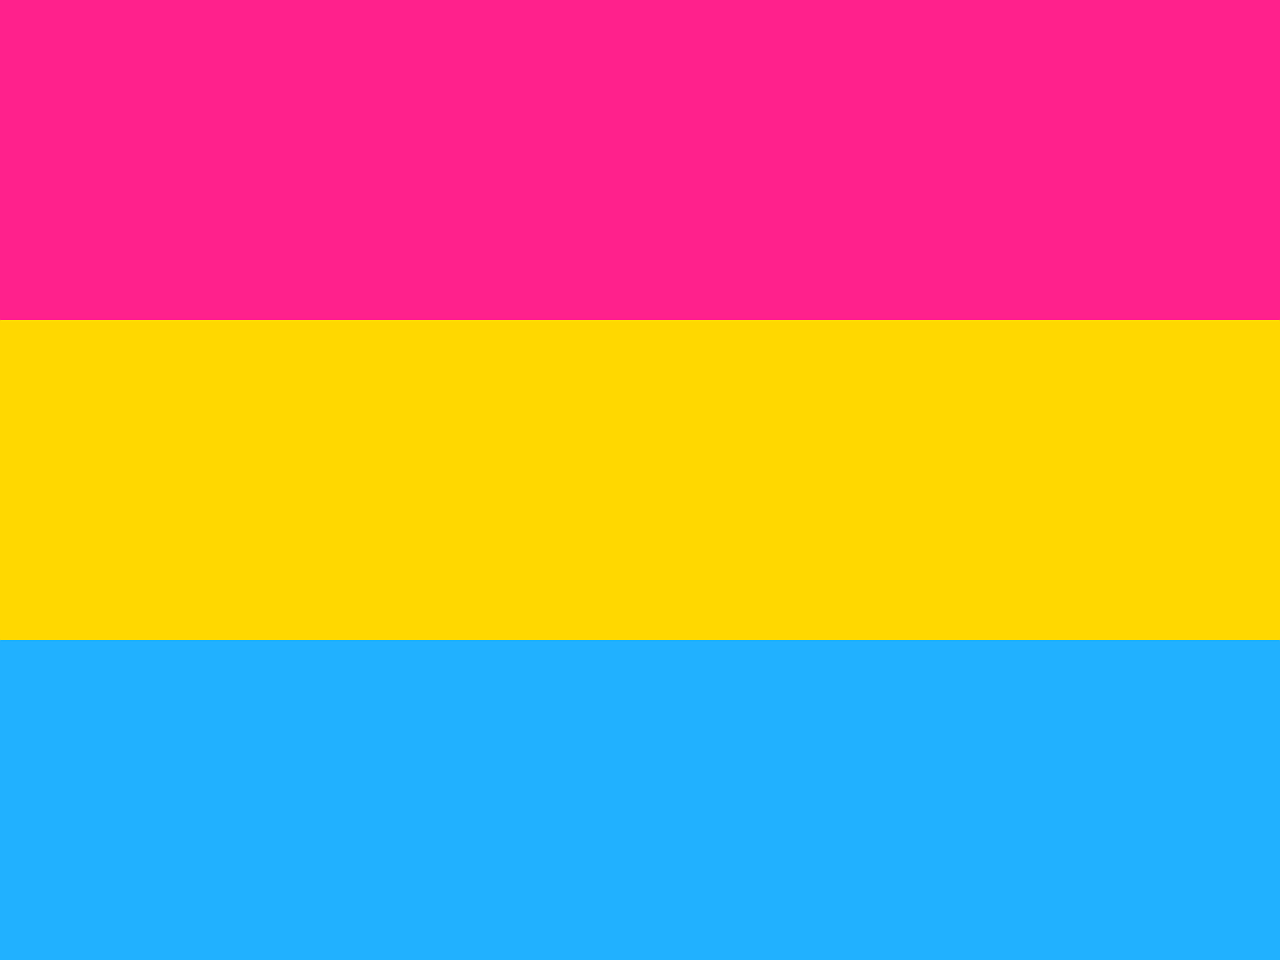 ¿Qué significado tiene la bandera pansexual?